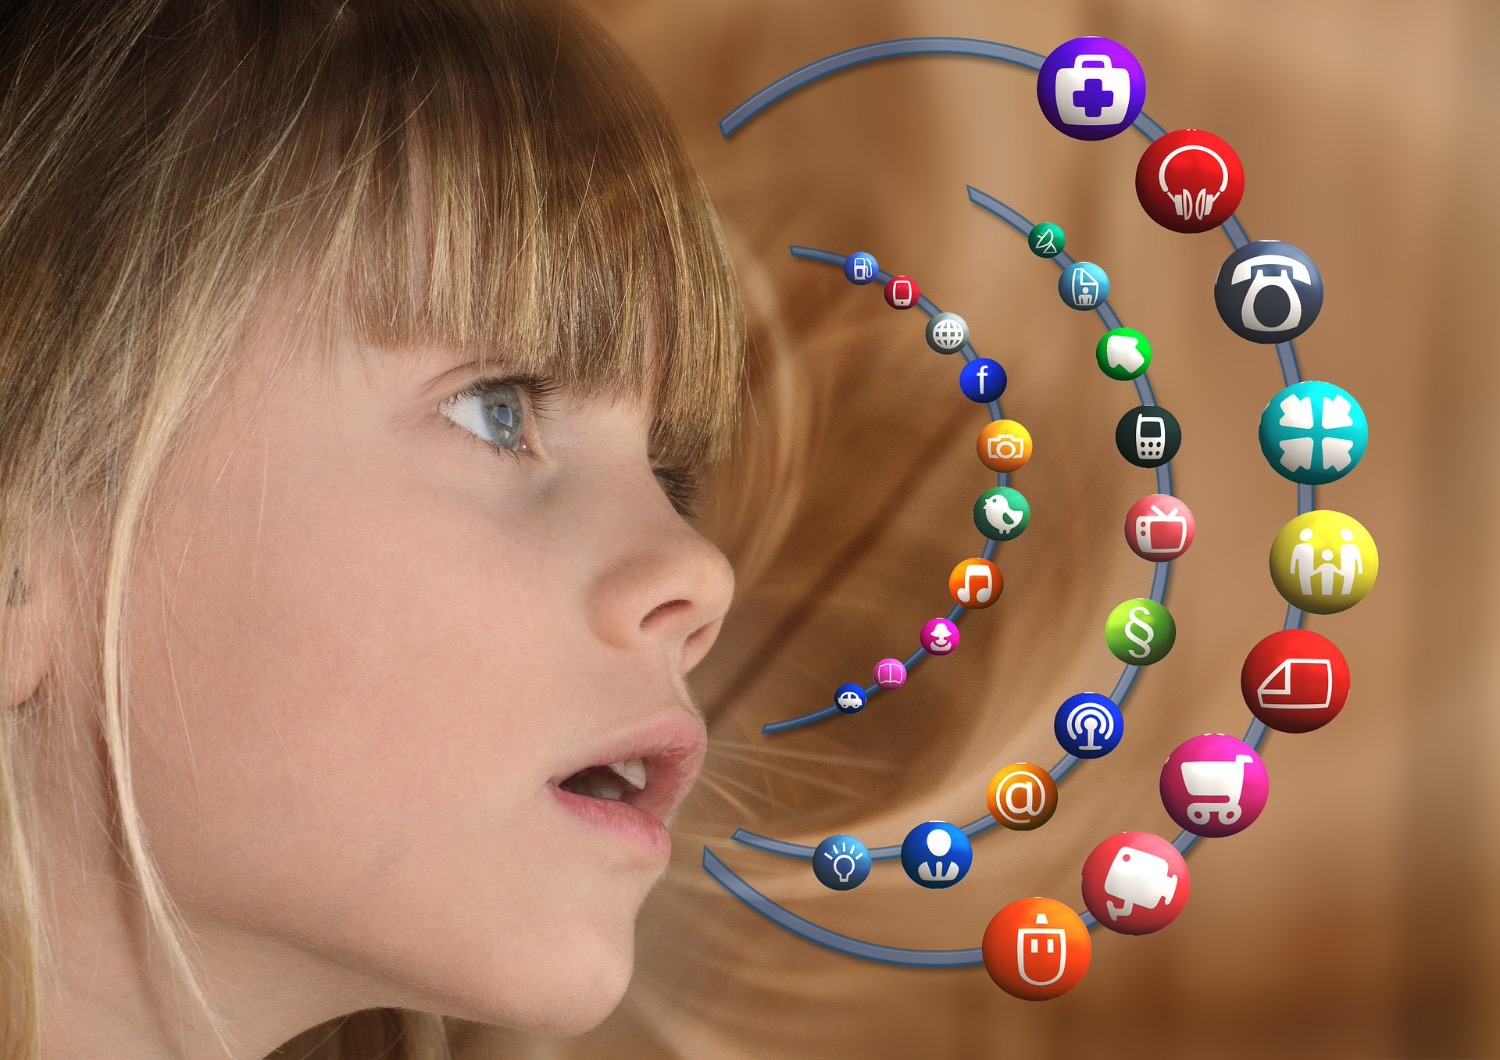 Titelbild zur Idee für die Beschäftigung mit Kindern 'Suchmaschinen für Kinder'